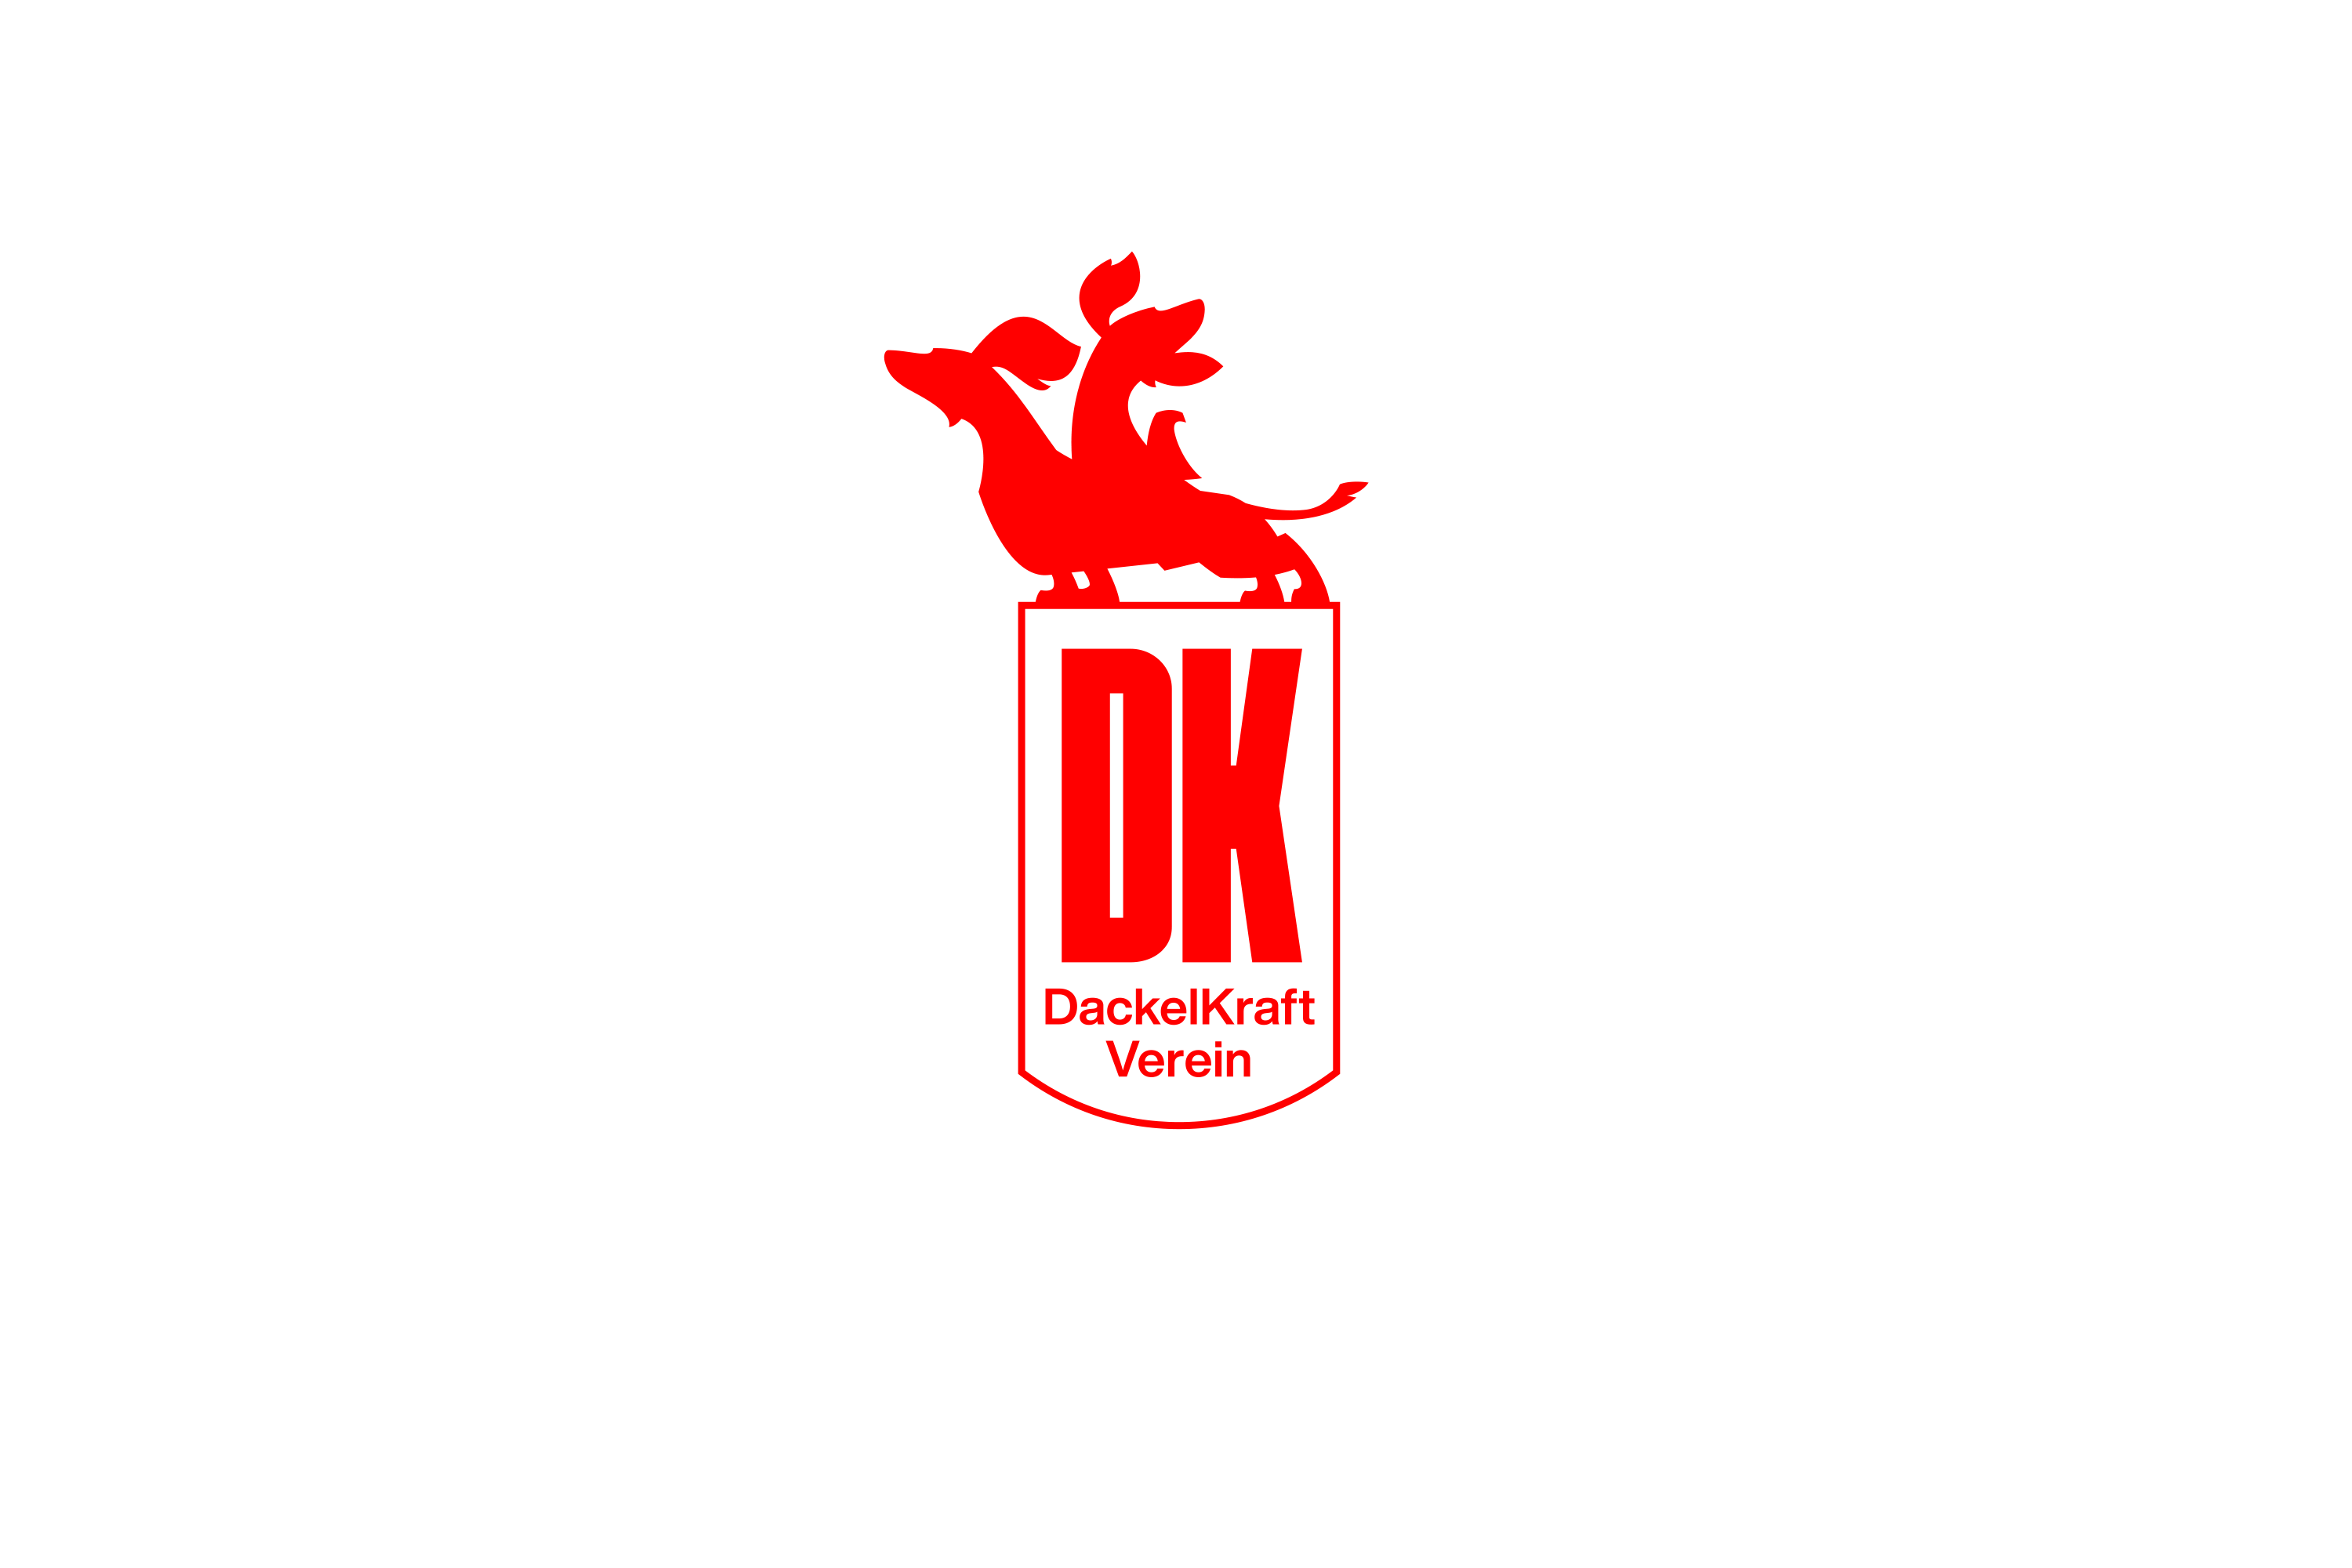 Dackelkraft logo (vertical version)